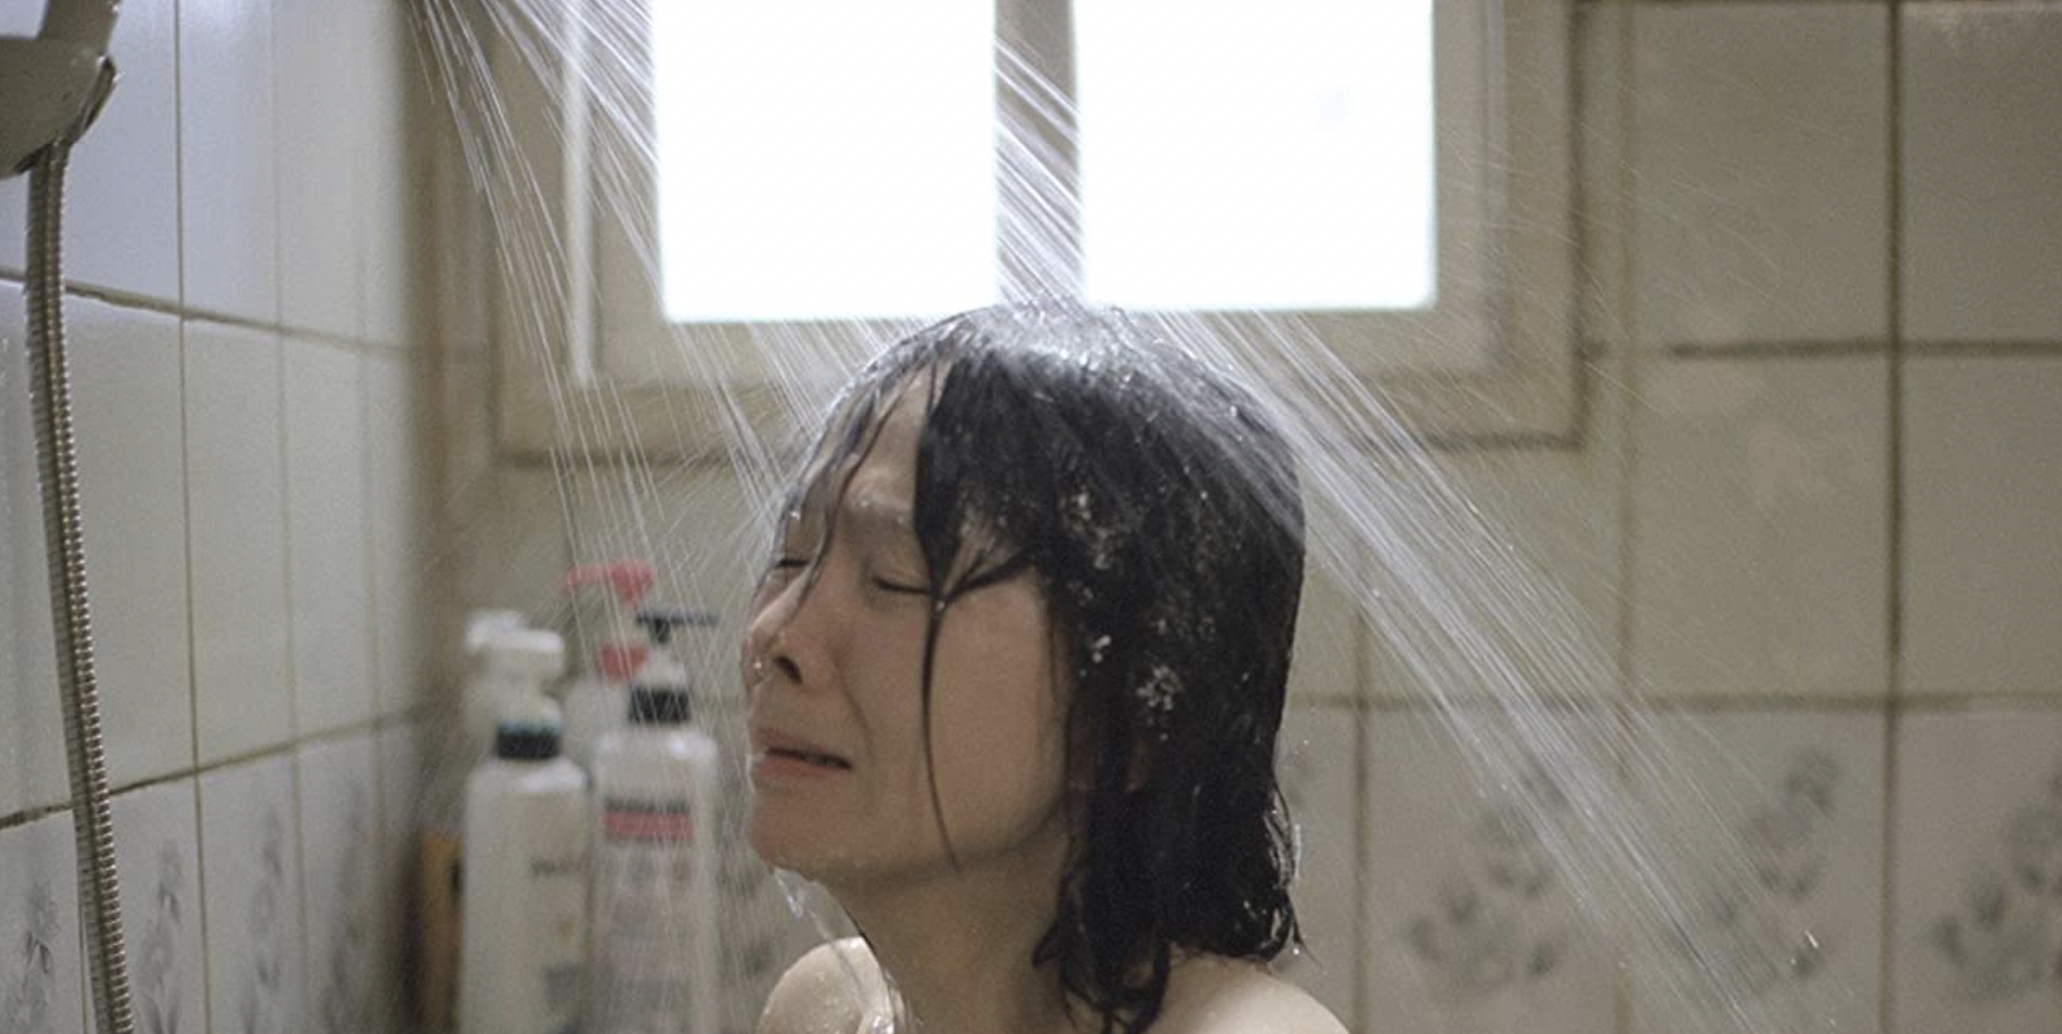 image: Sad in shower